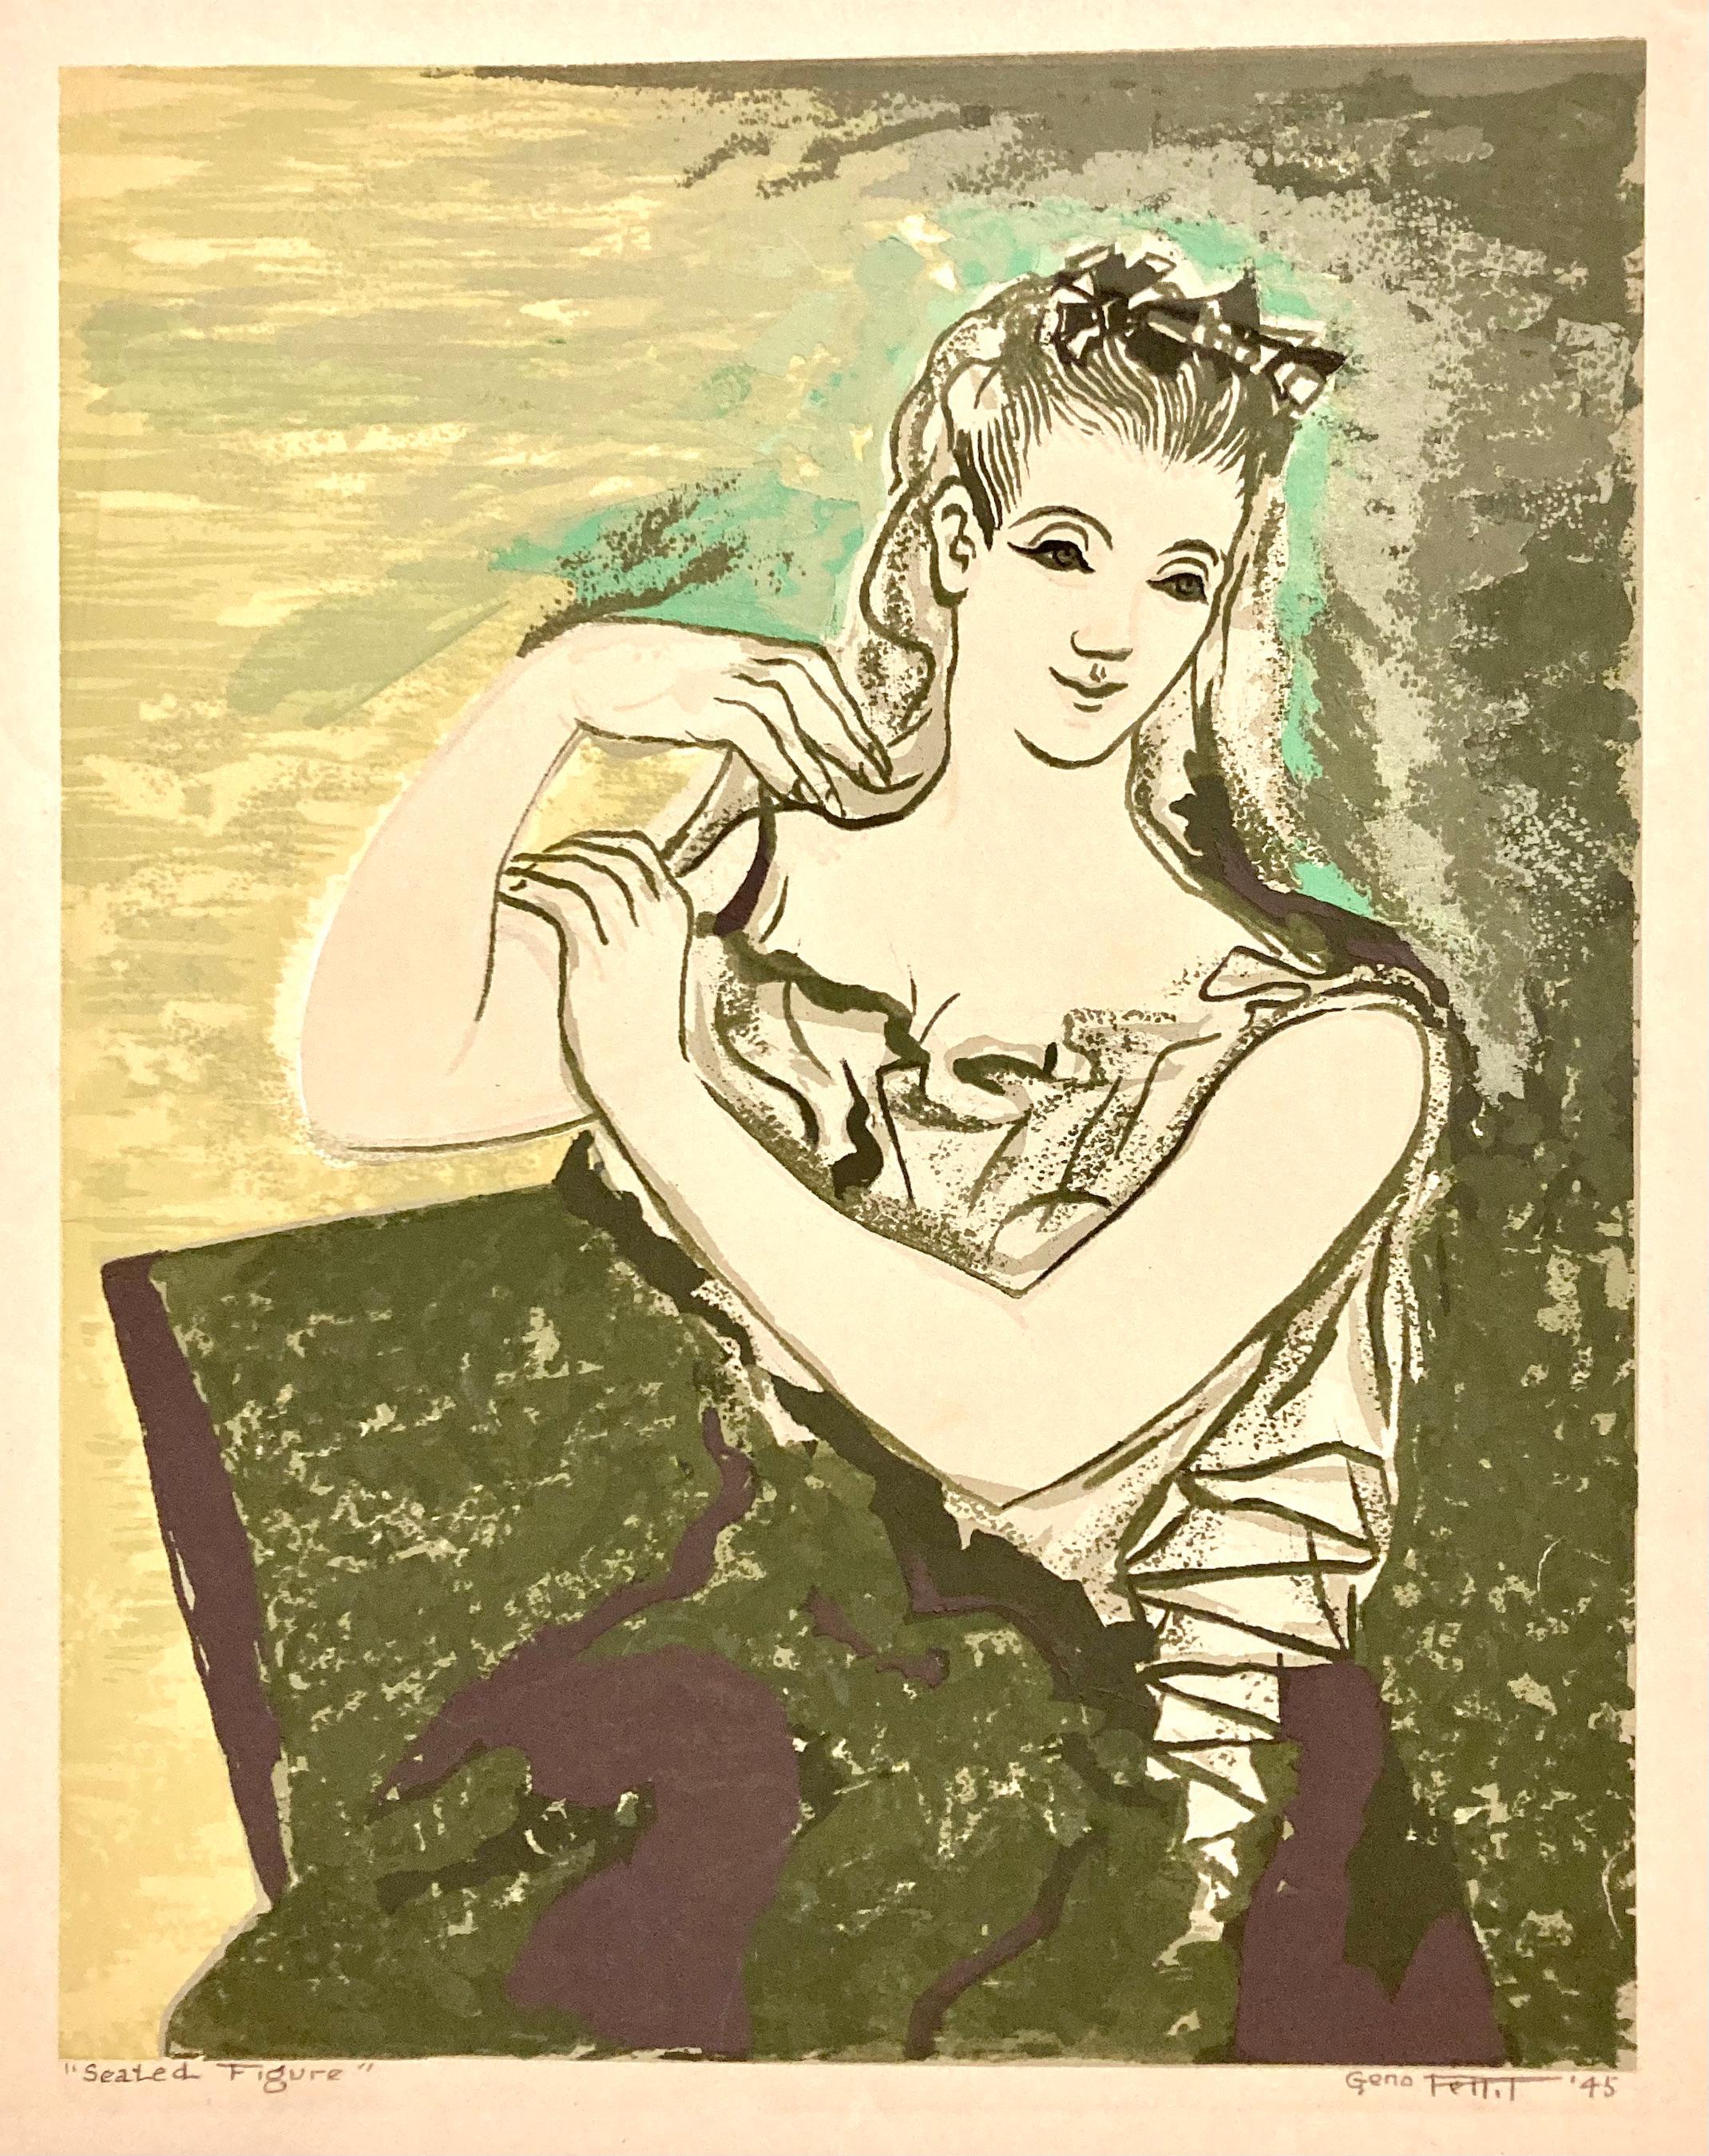 Seated Figure de Geno (parfois Genoi) Pettit, réalisée en 1945, est une image merveilleusement "moderne". La femme porte un chemisier ou une robe d'inspiration romaine et est représentée sur un fond jaune/vert, chartreuse. On a l'impression qu'elle